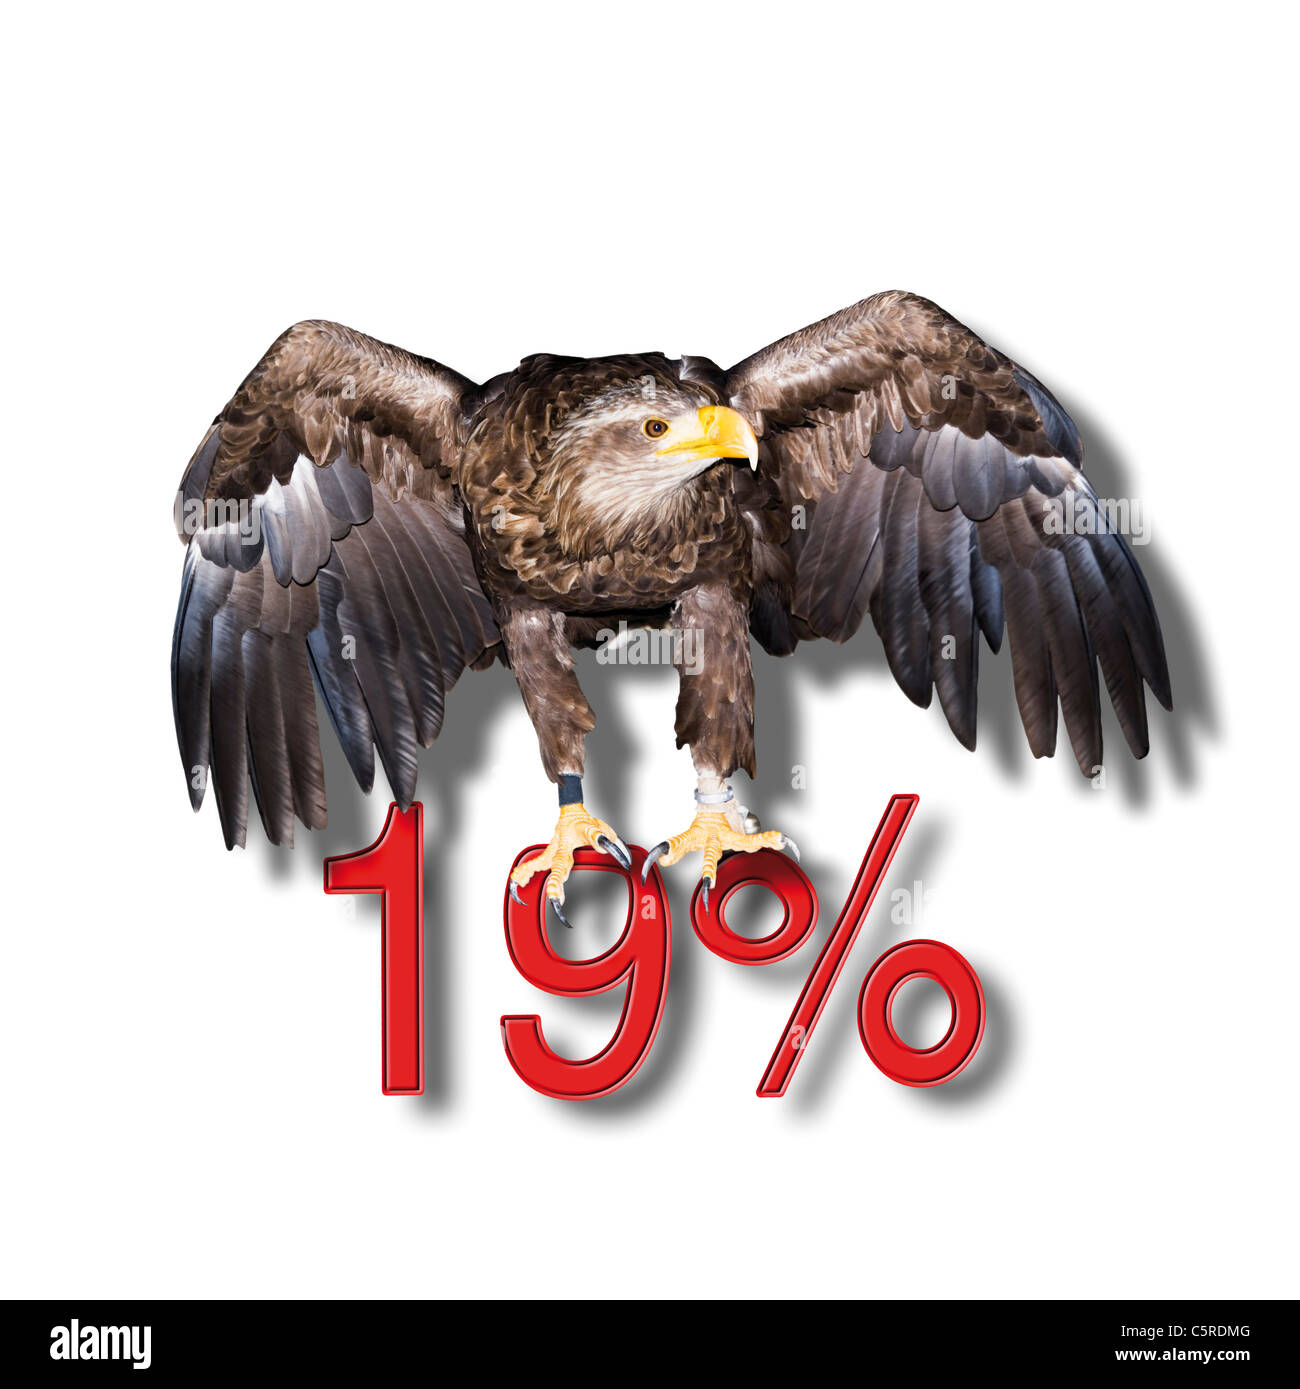 Eagle Federeal assis sur 19  % rouge affiche, symbole Banque D'Images